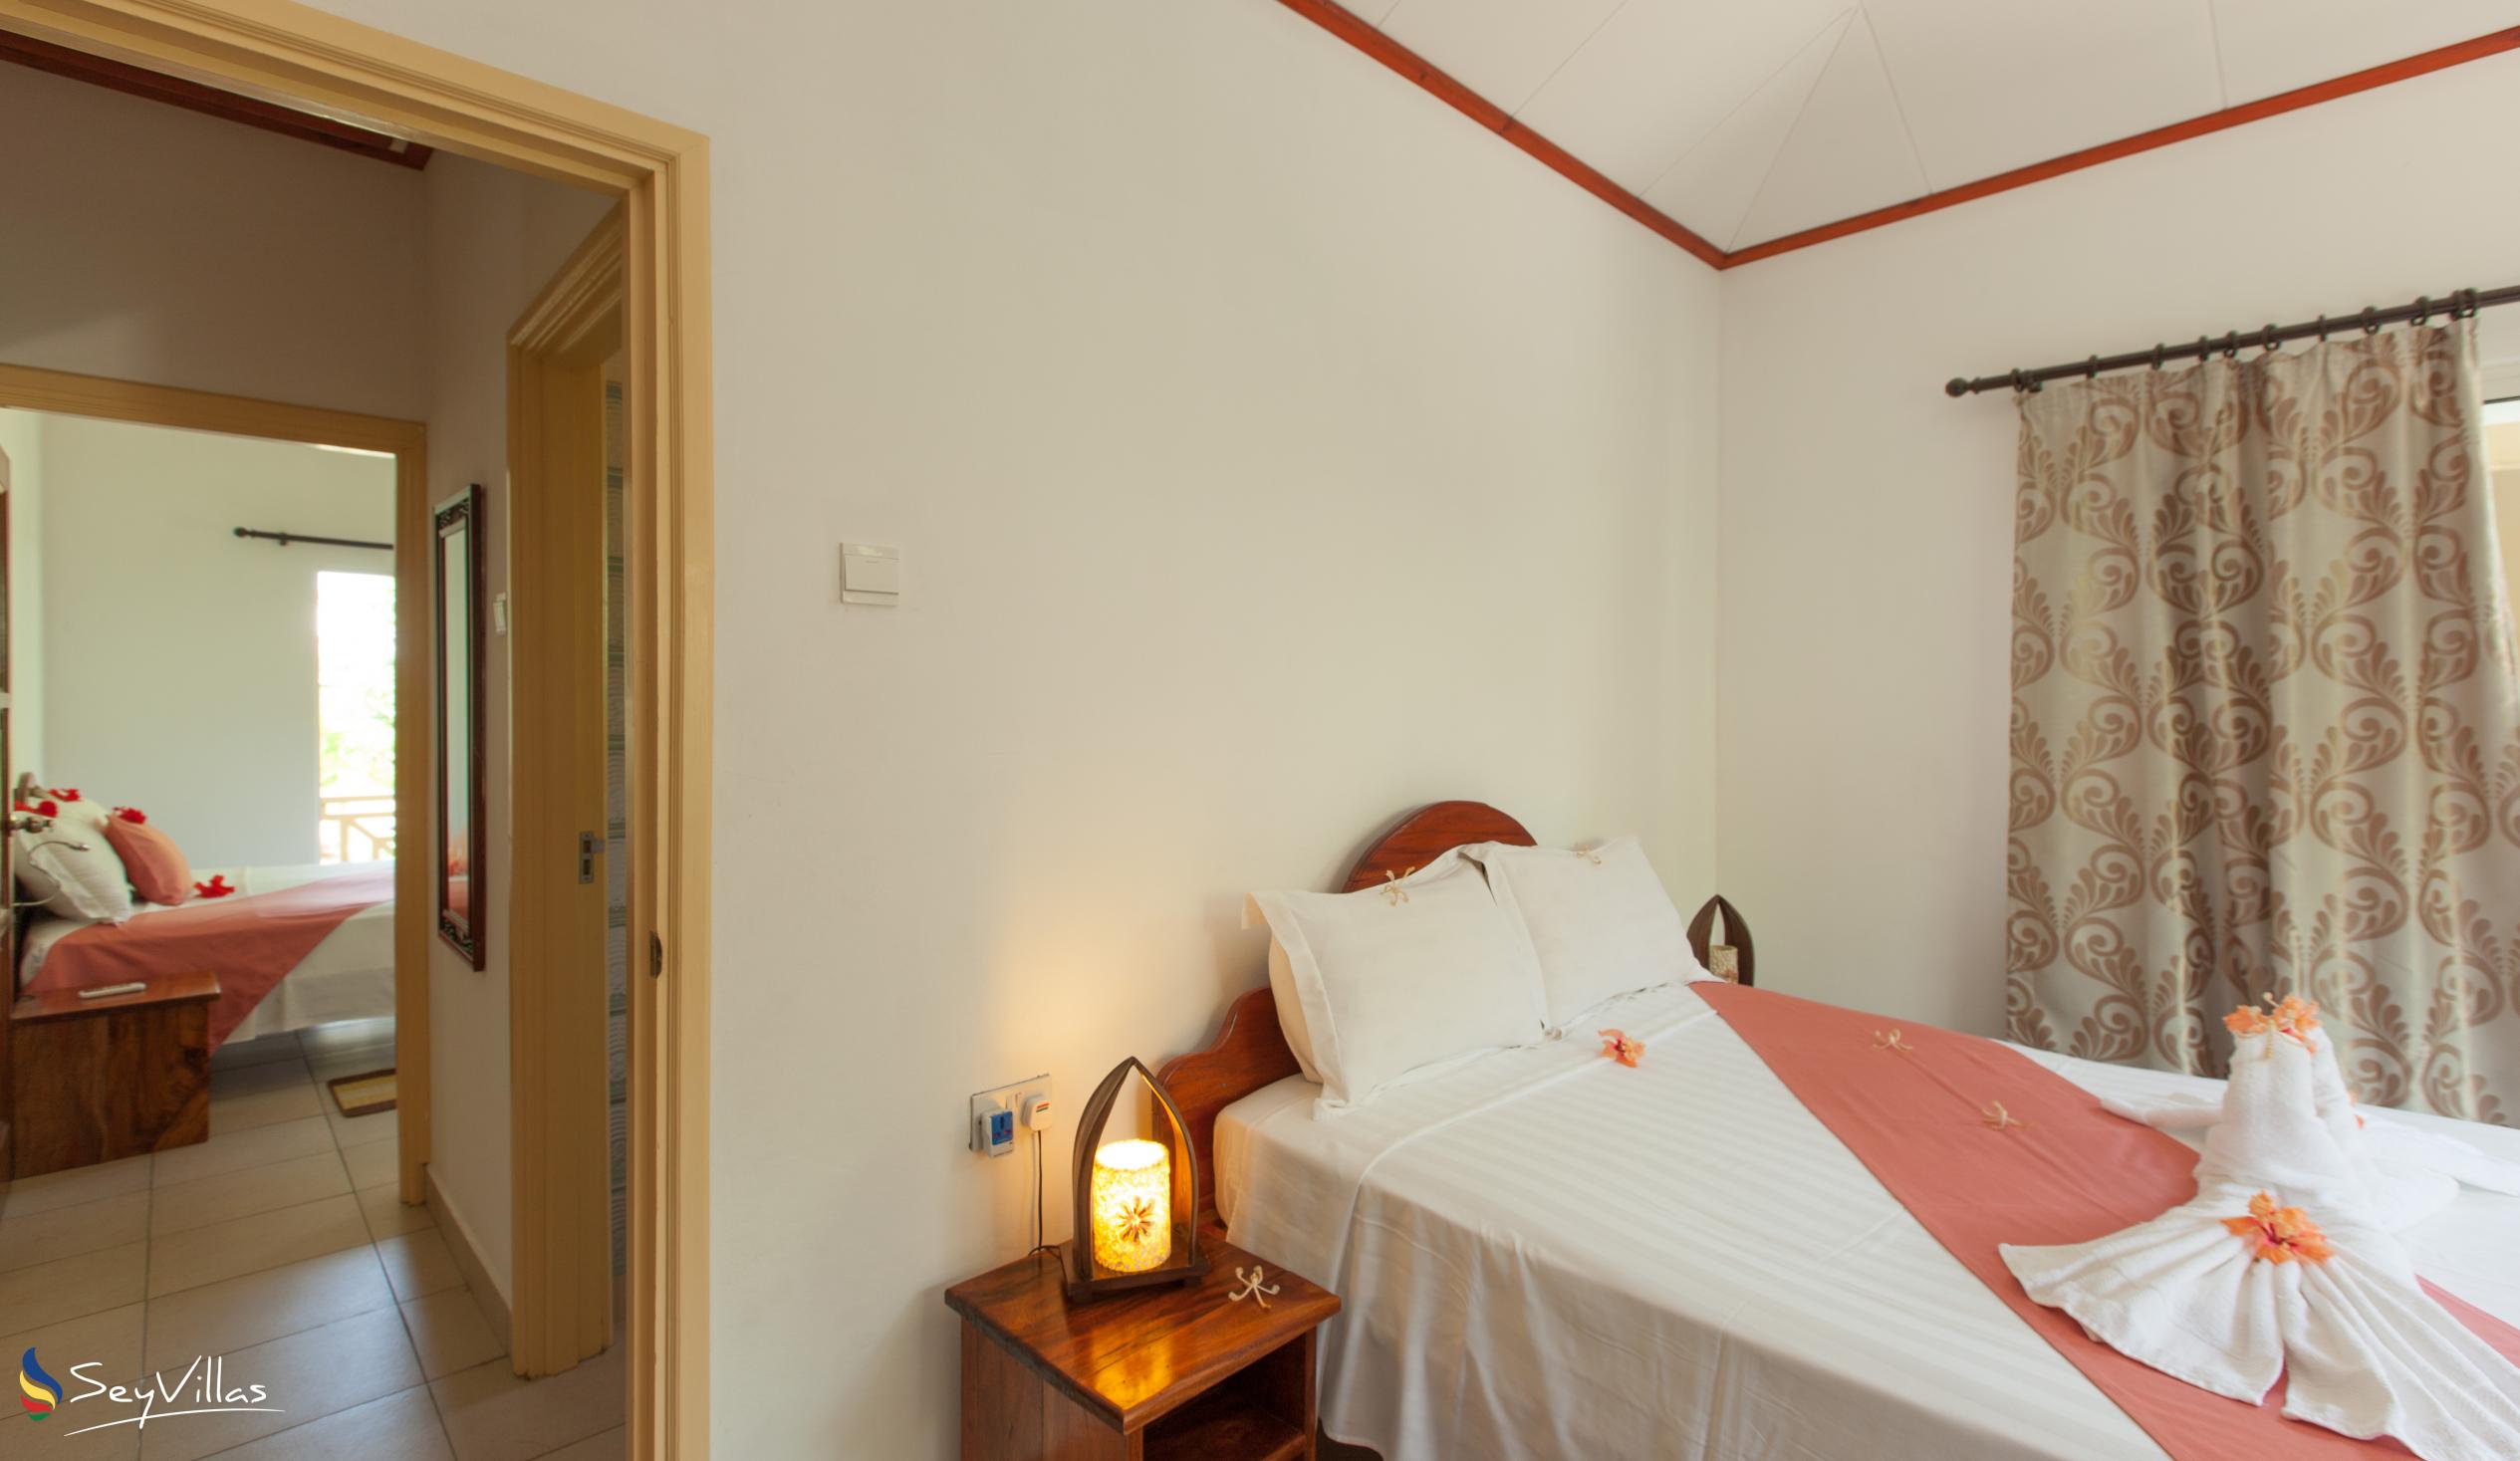 Foto 23: Hostellerie La Digue - Bungalow con 3 camere da letto - La Digue (Seychelles)